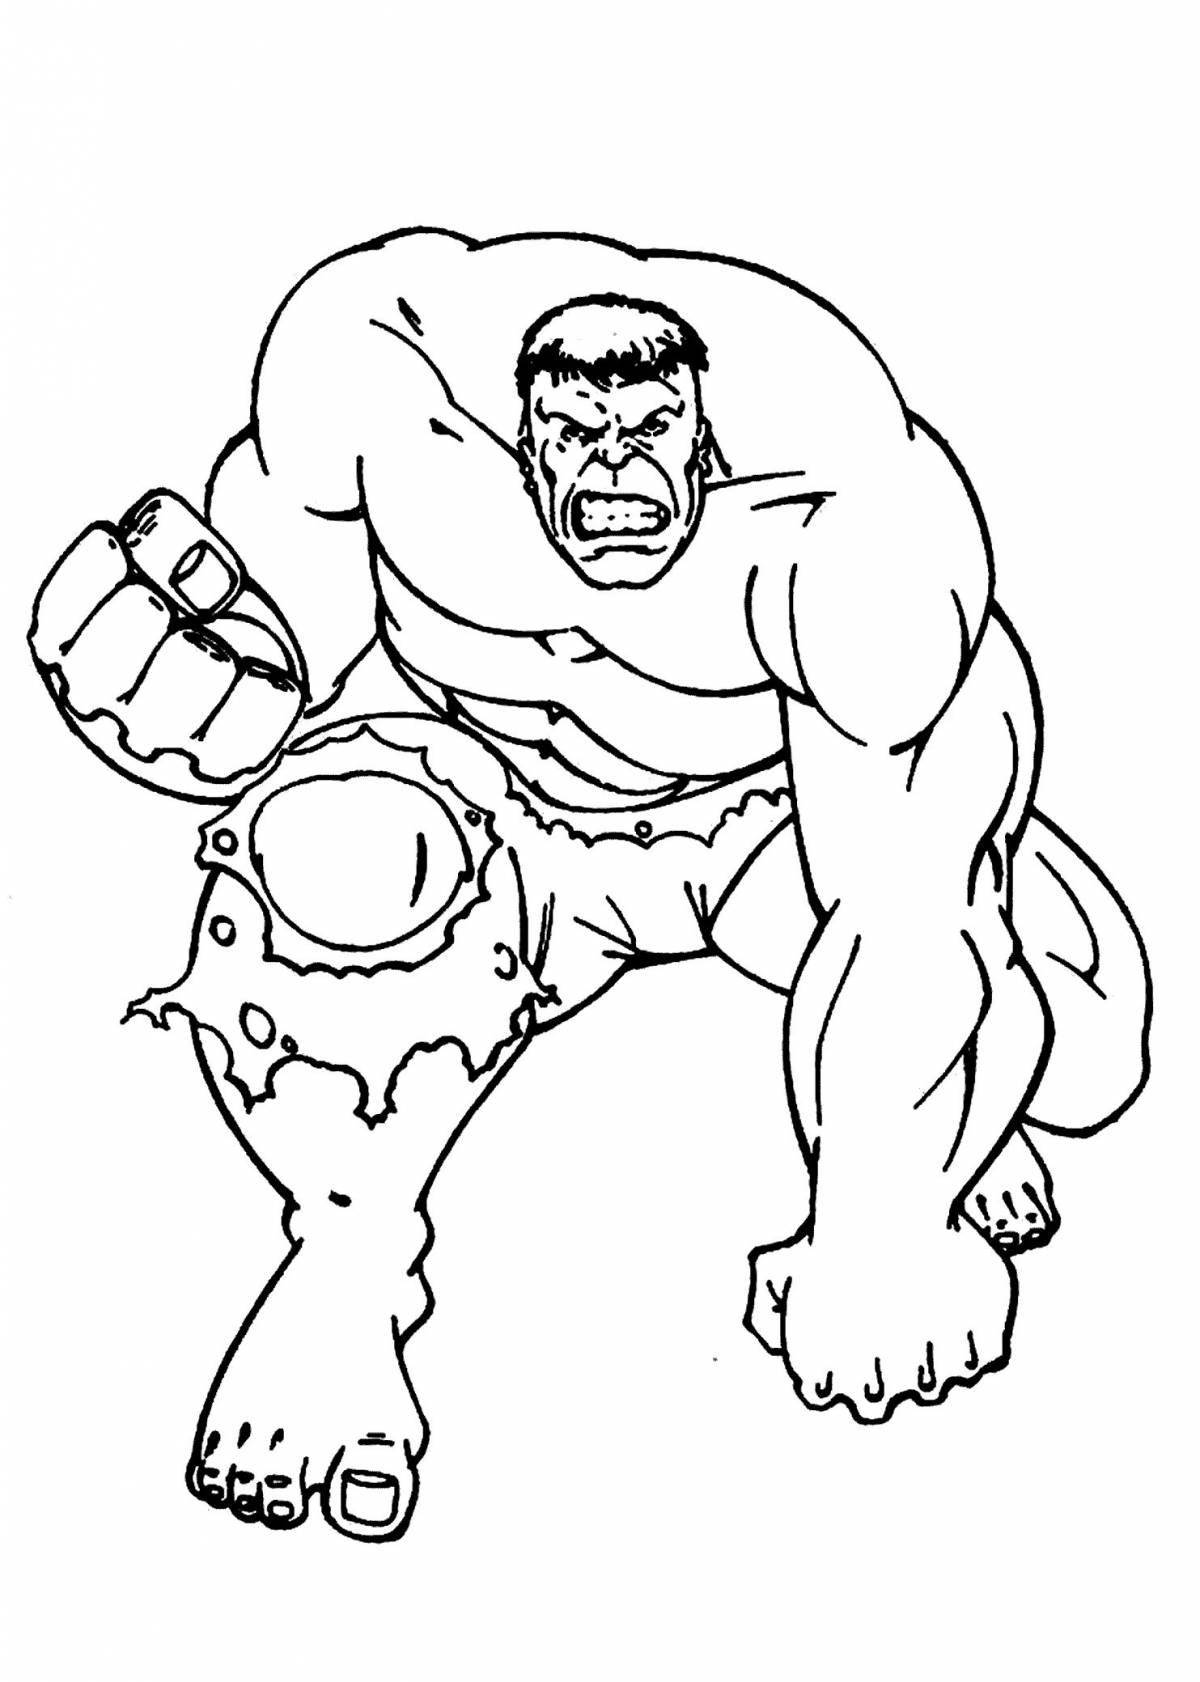 Hulk coloring book for kids